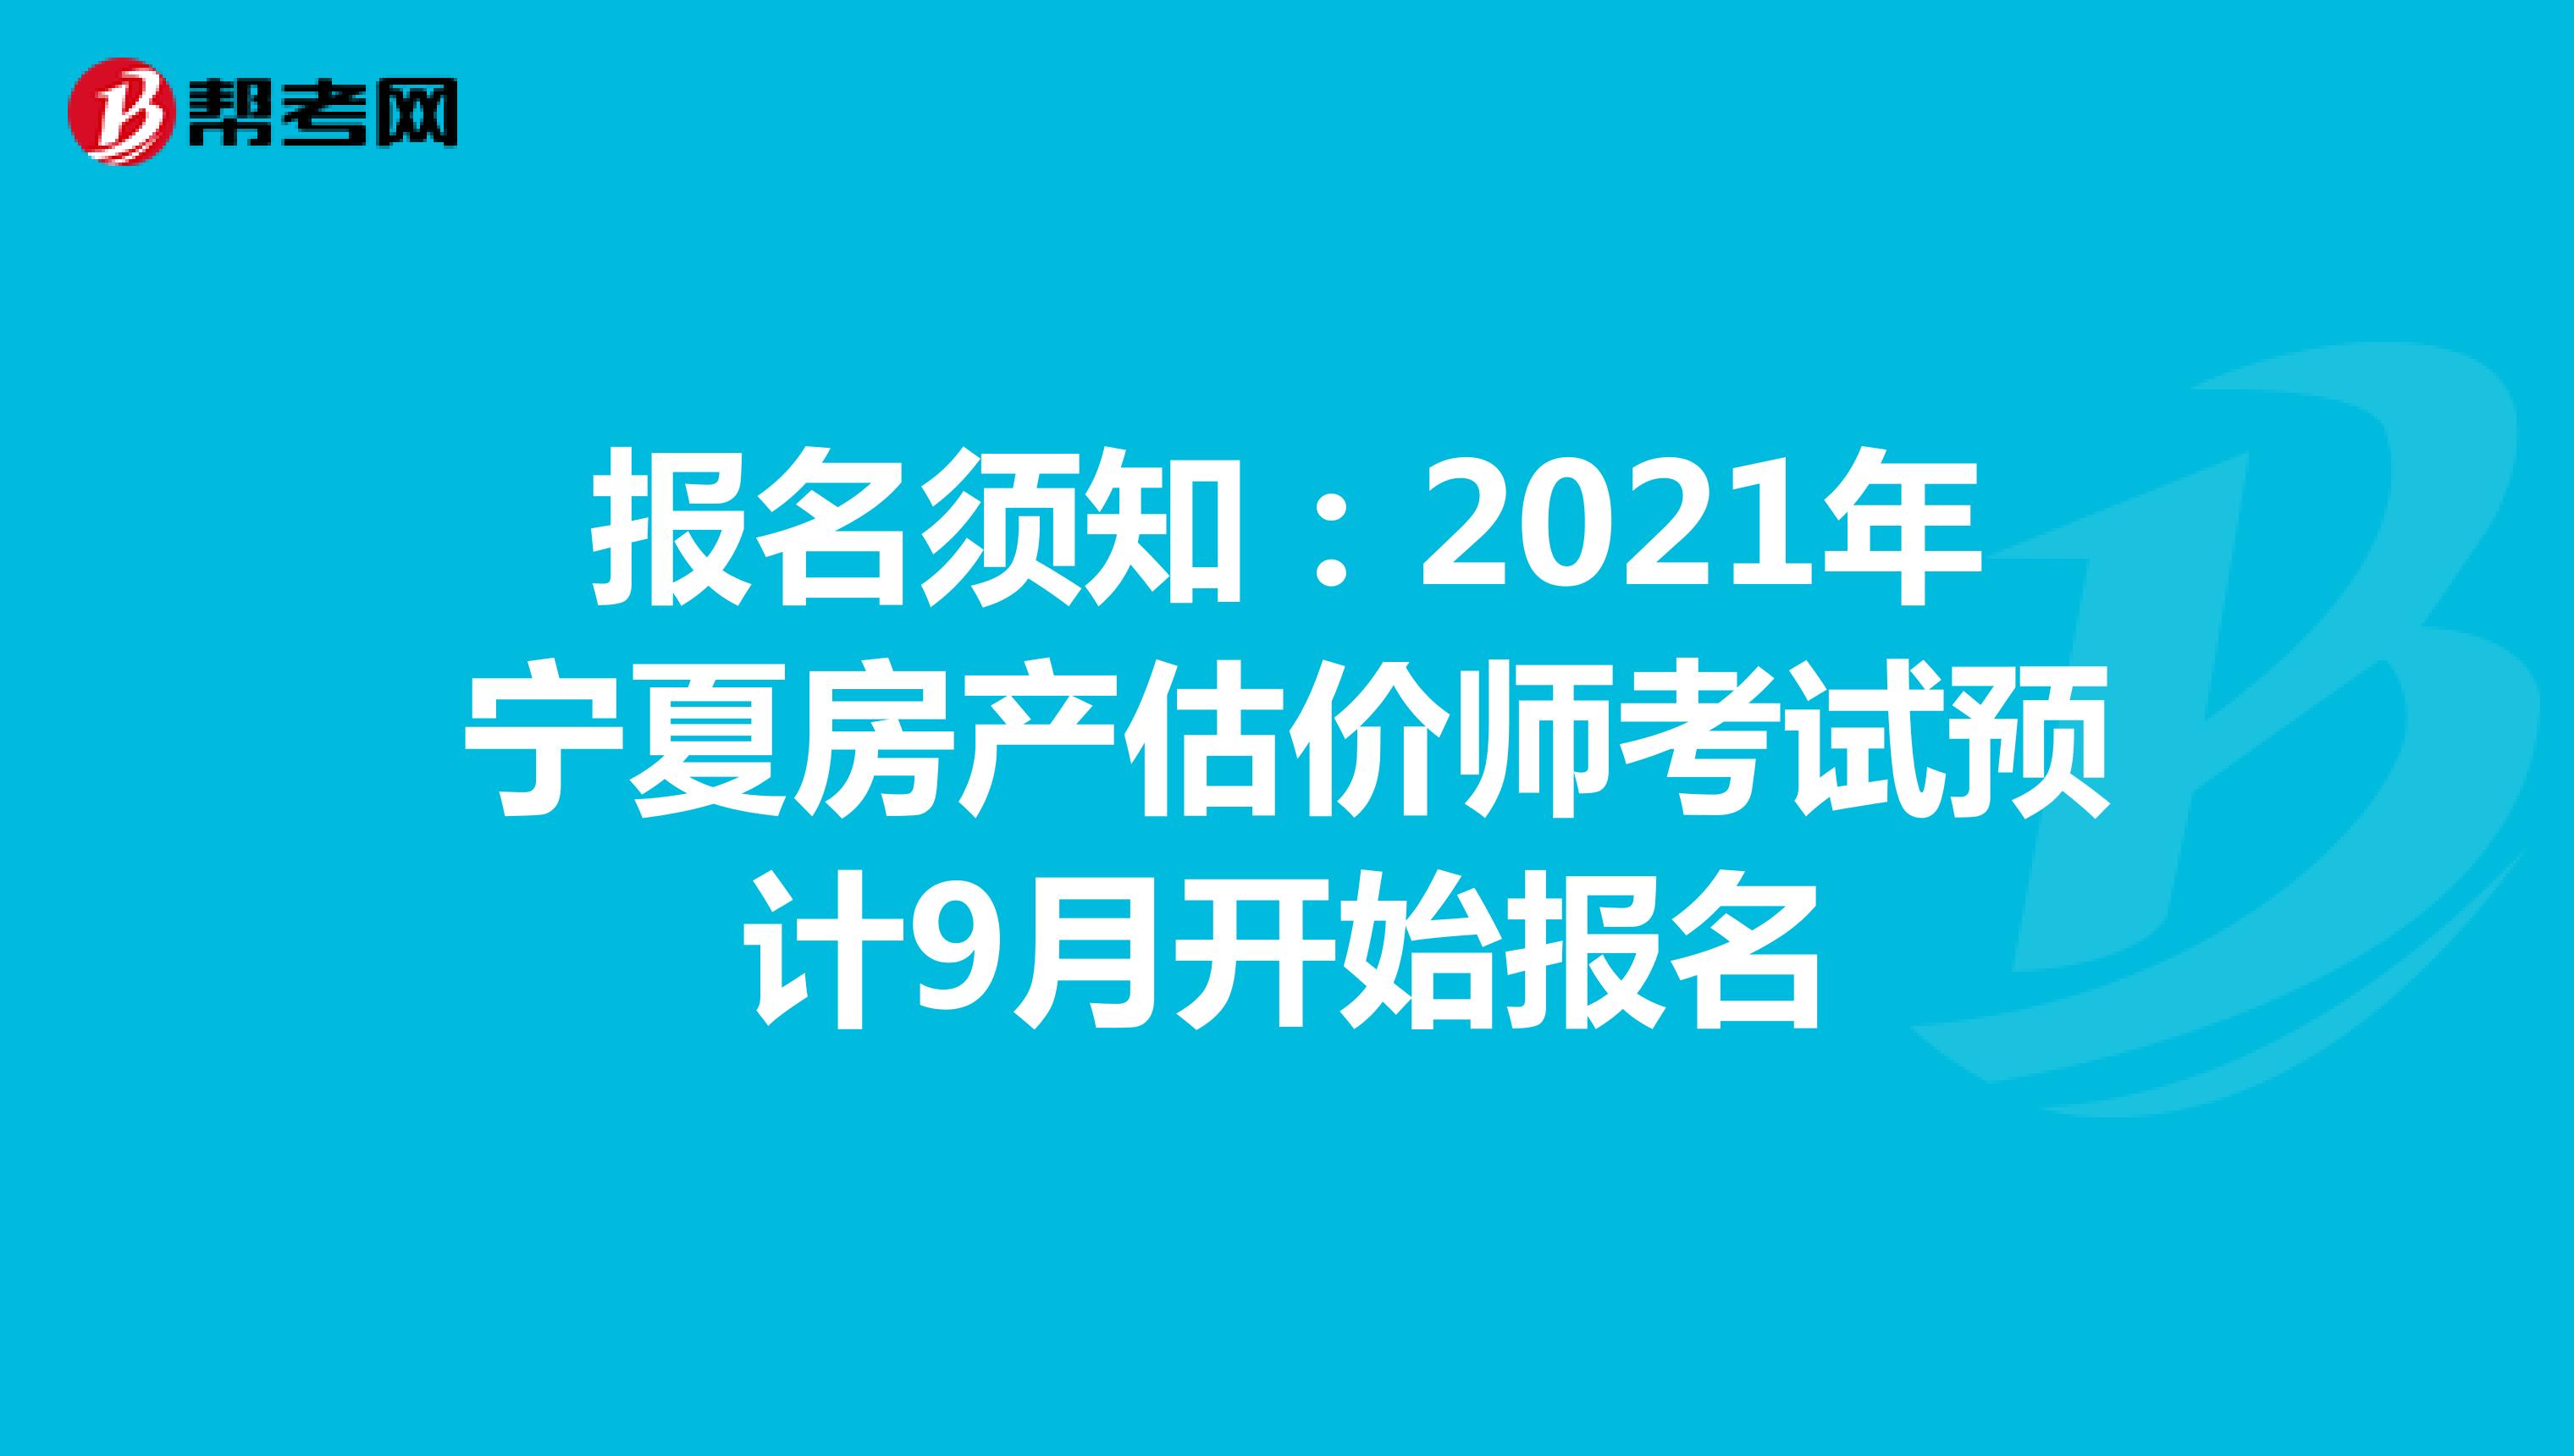 报名须知：2021年宁夏房产估价师考试预计9月开始报名